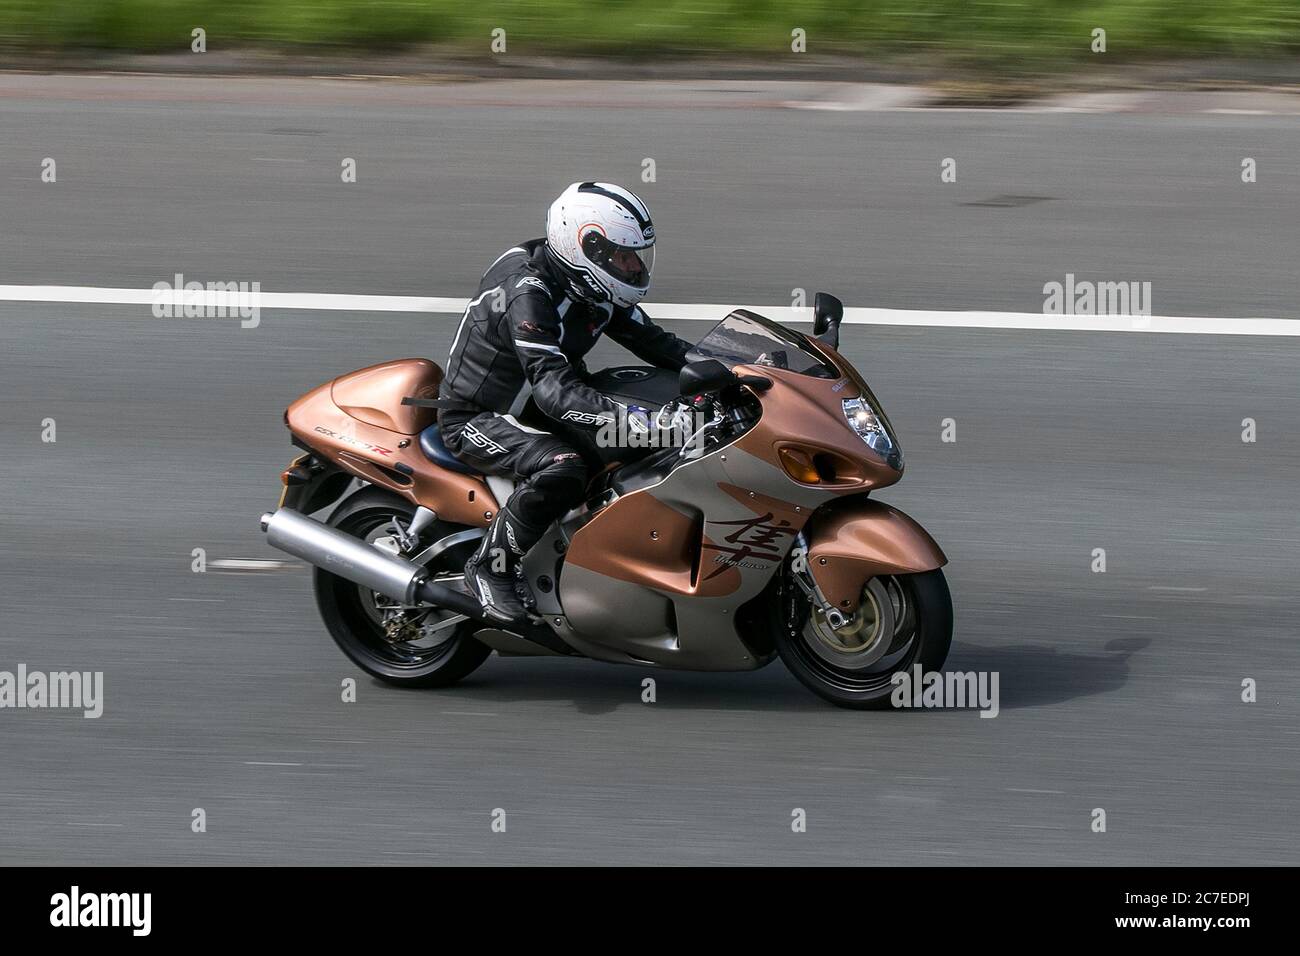 Suzuki Hayabusa Motorbike rider; two wheeled transport, motorcycles, vehicle, roads, motorbikes, bike riders motoring in Chorley, UK Stock Photo